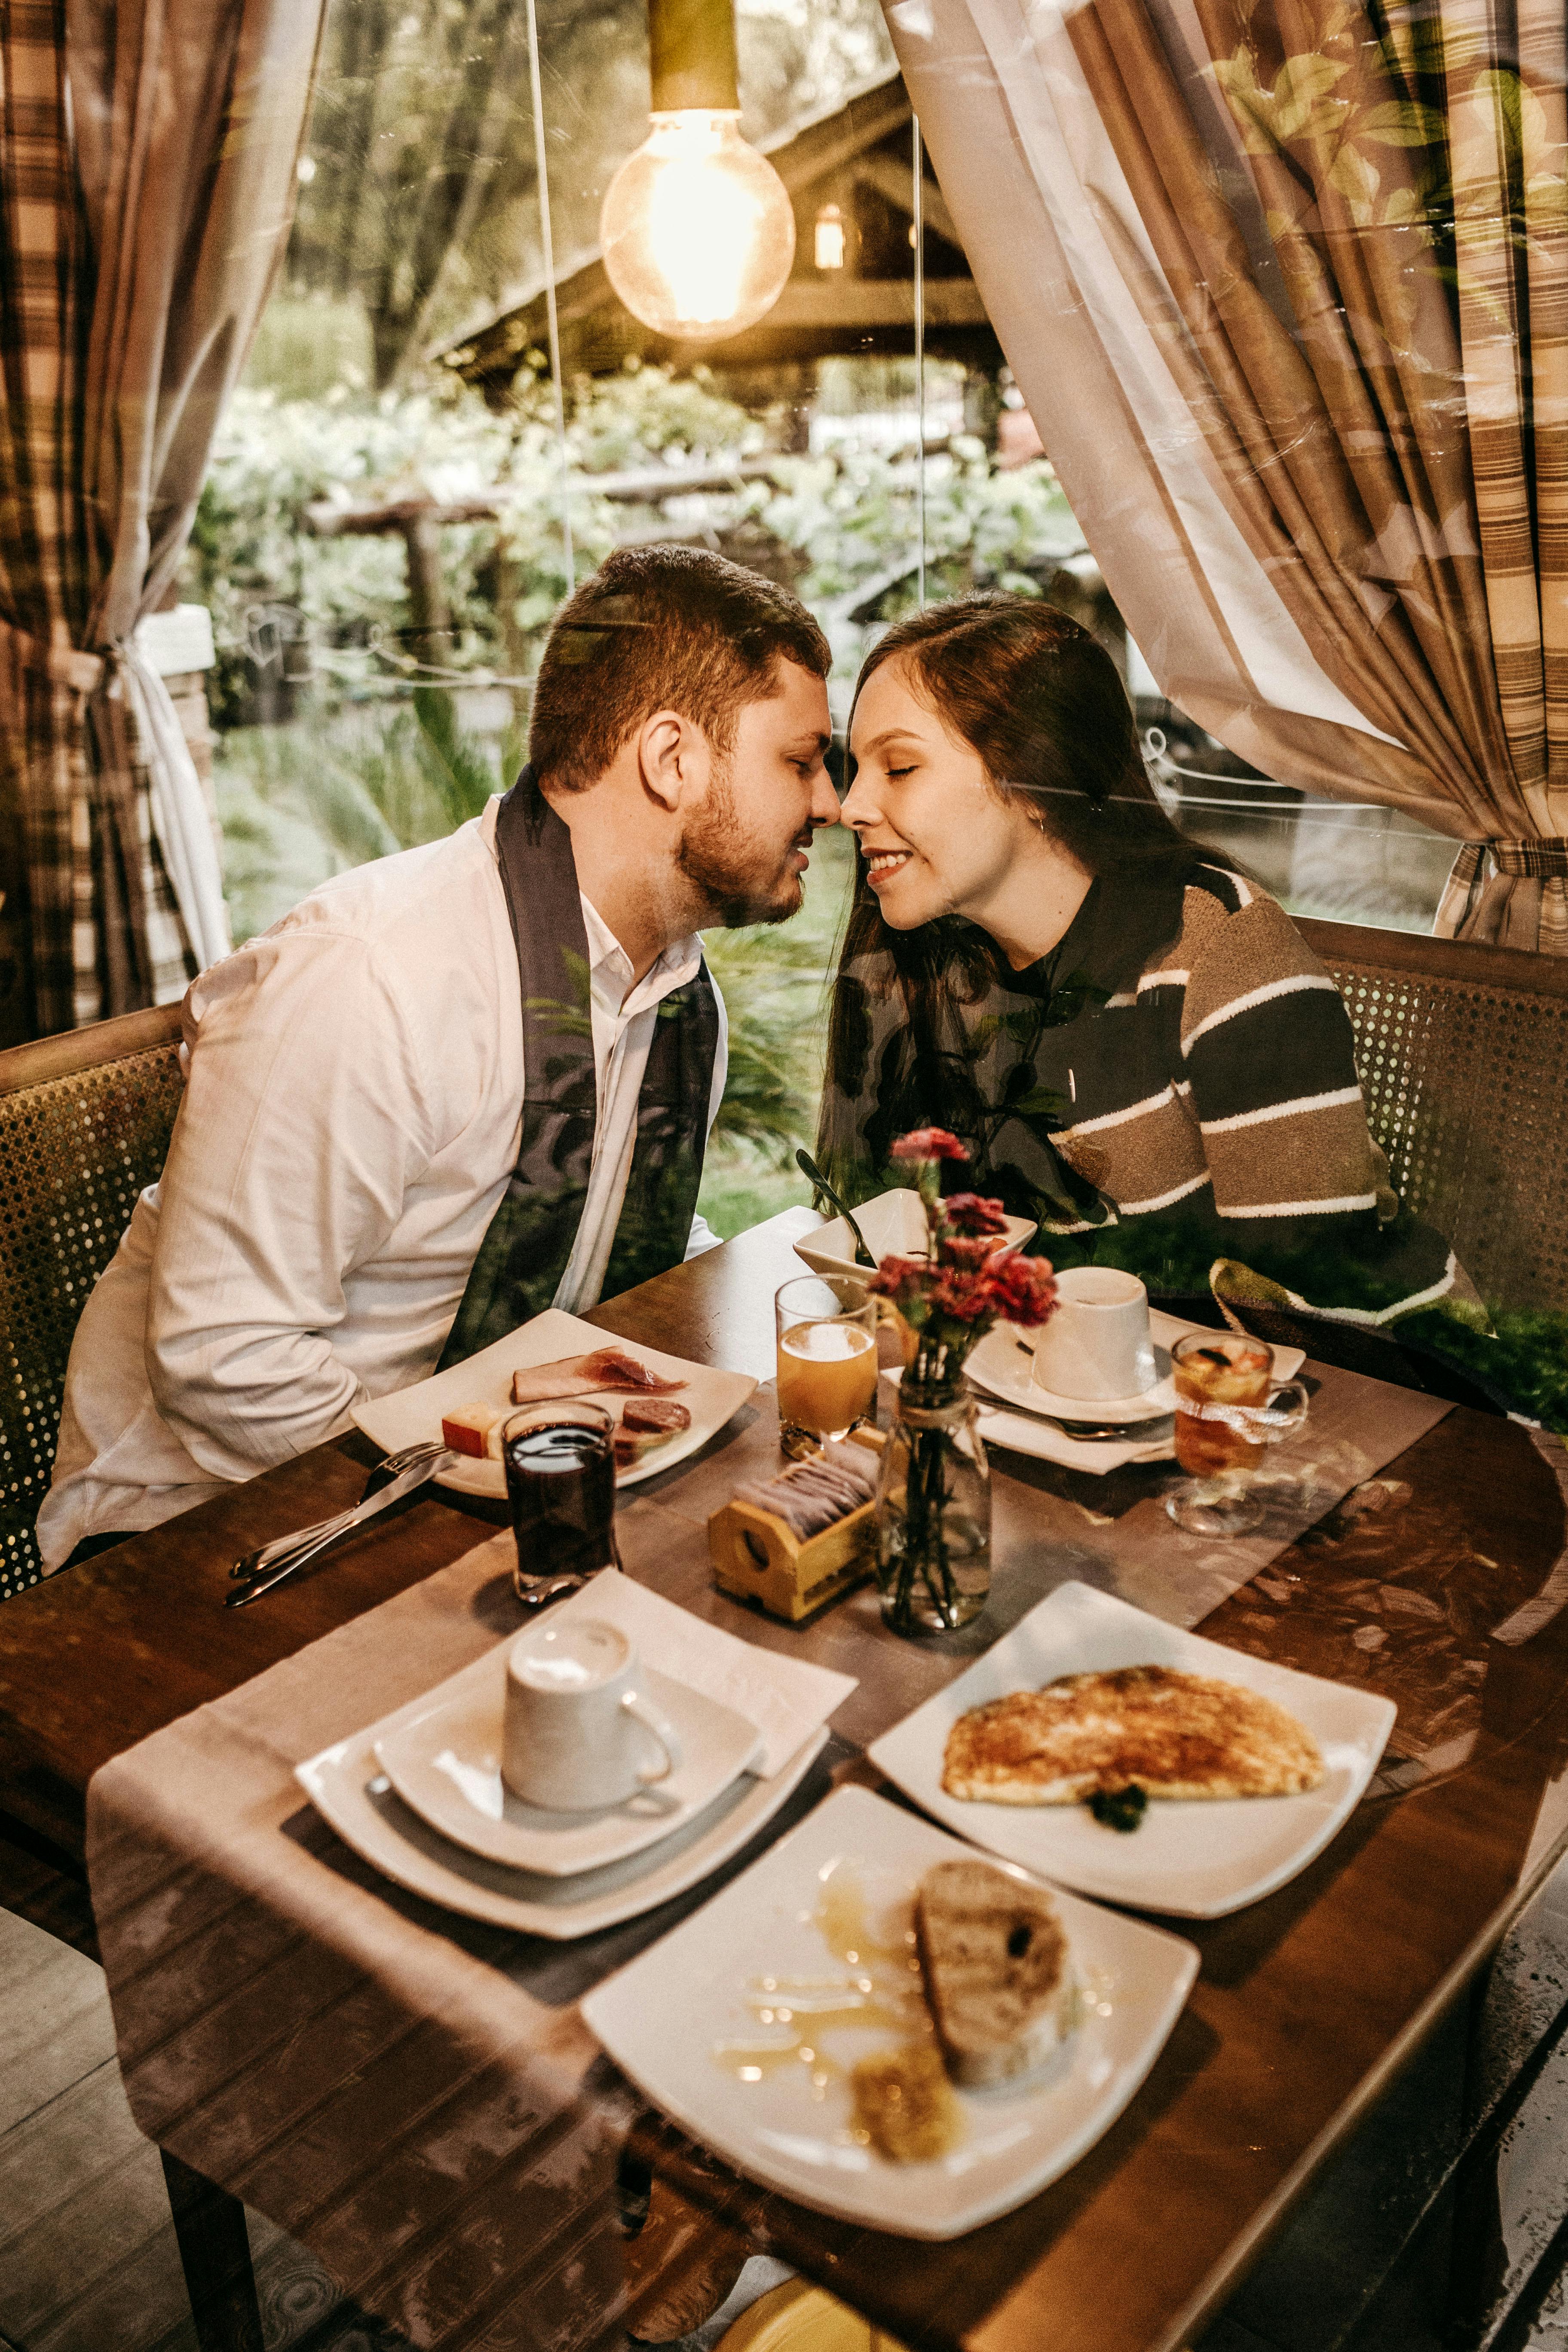 Una pareja a punto de besarse en un restaurante | Fuente: Pexels